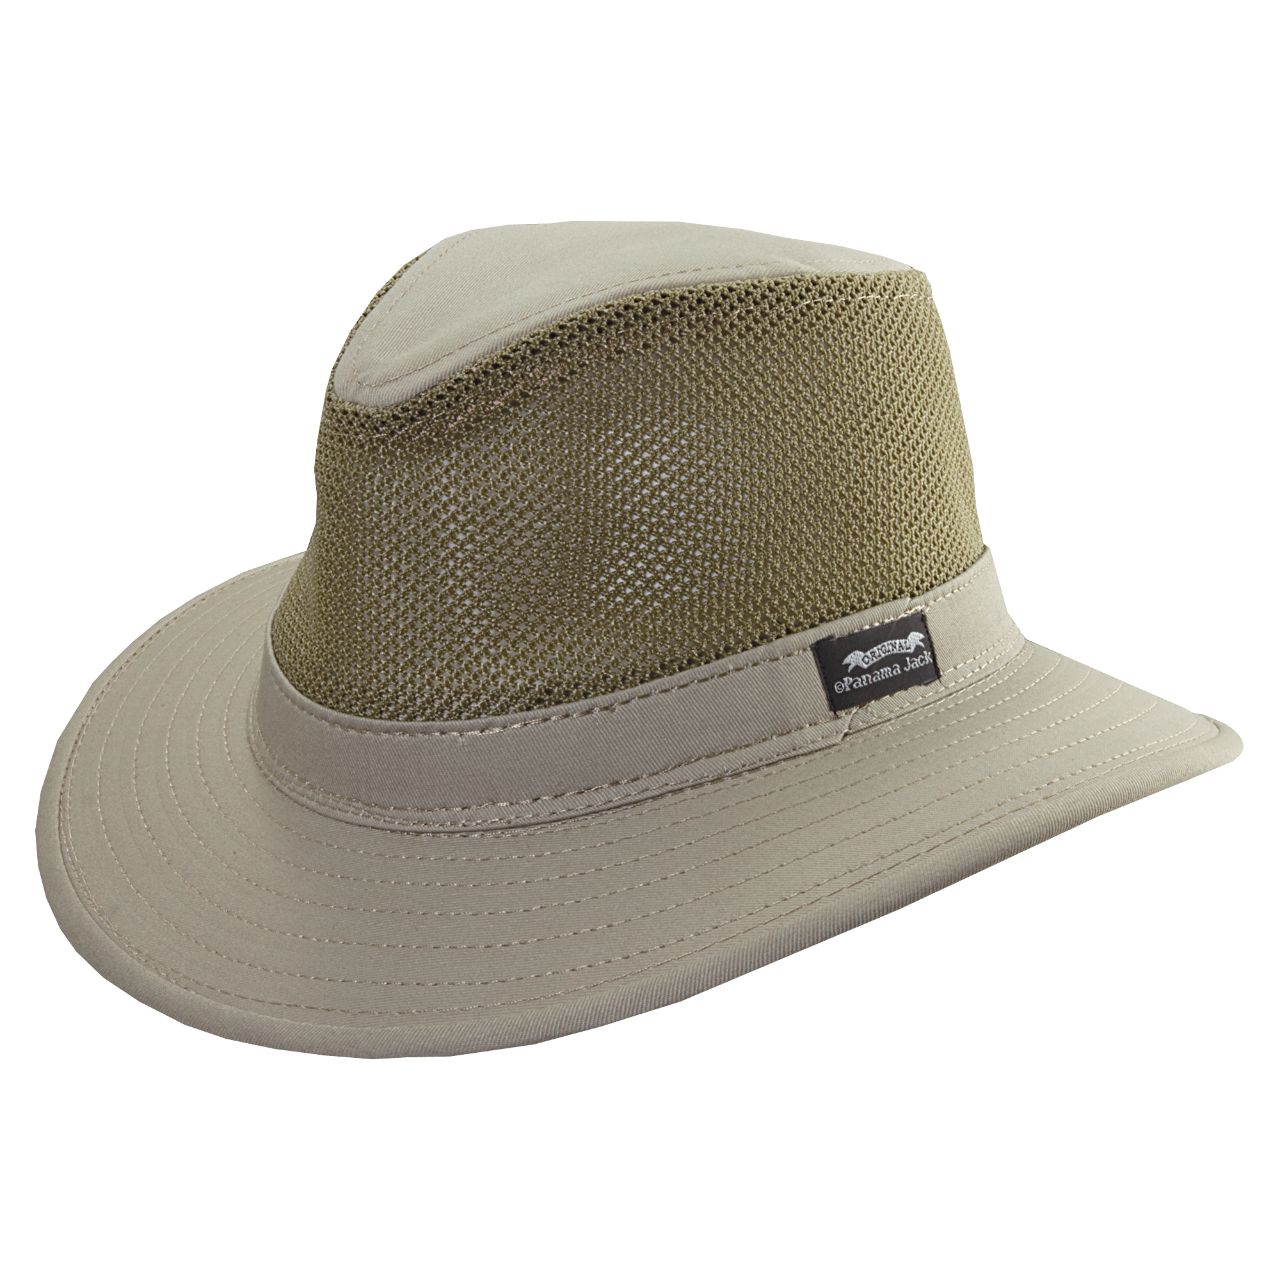 ORIGINAL Panama Jack MESH Safari Hat, Style# PJ39NC-MESH